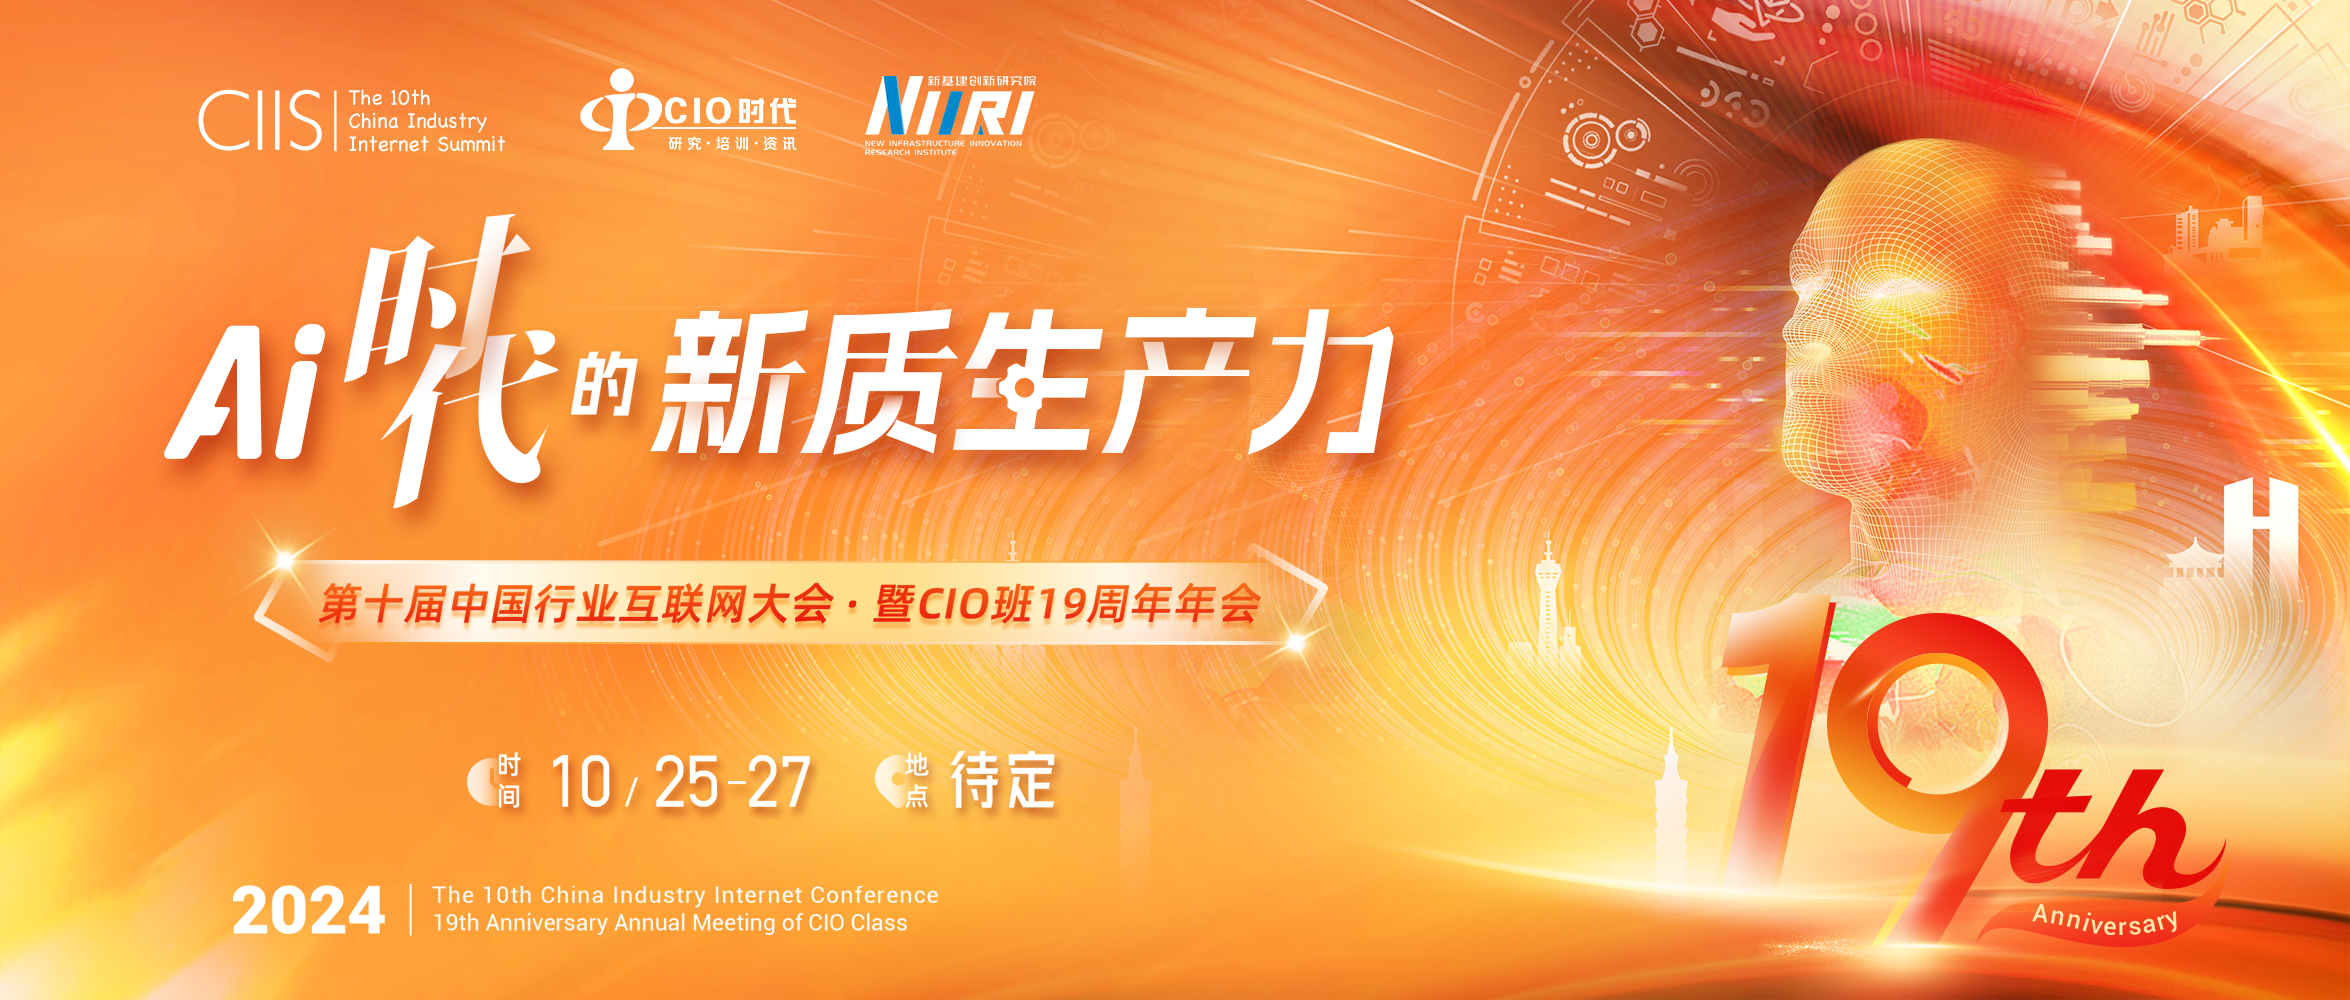 邀您相约10月25-27日：我们搞一波大事情！第十届中国行业互联网大会暨CIO班19周年年会重磅启幕！